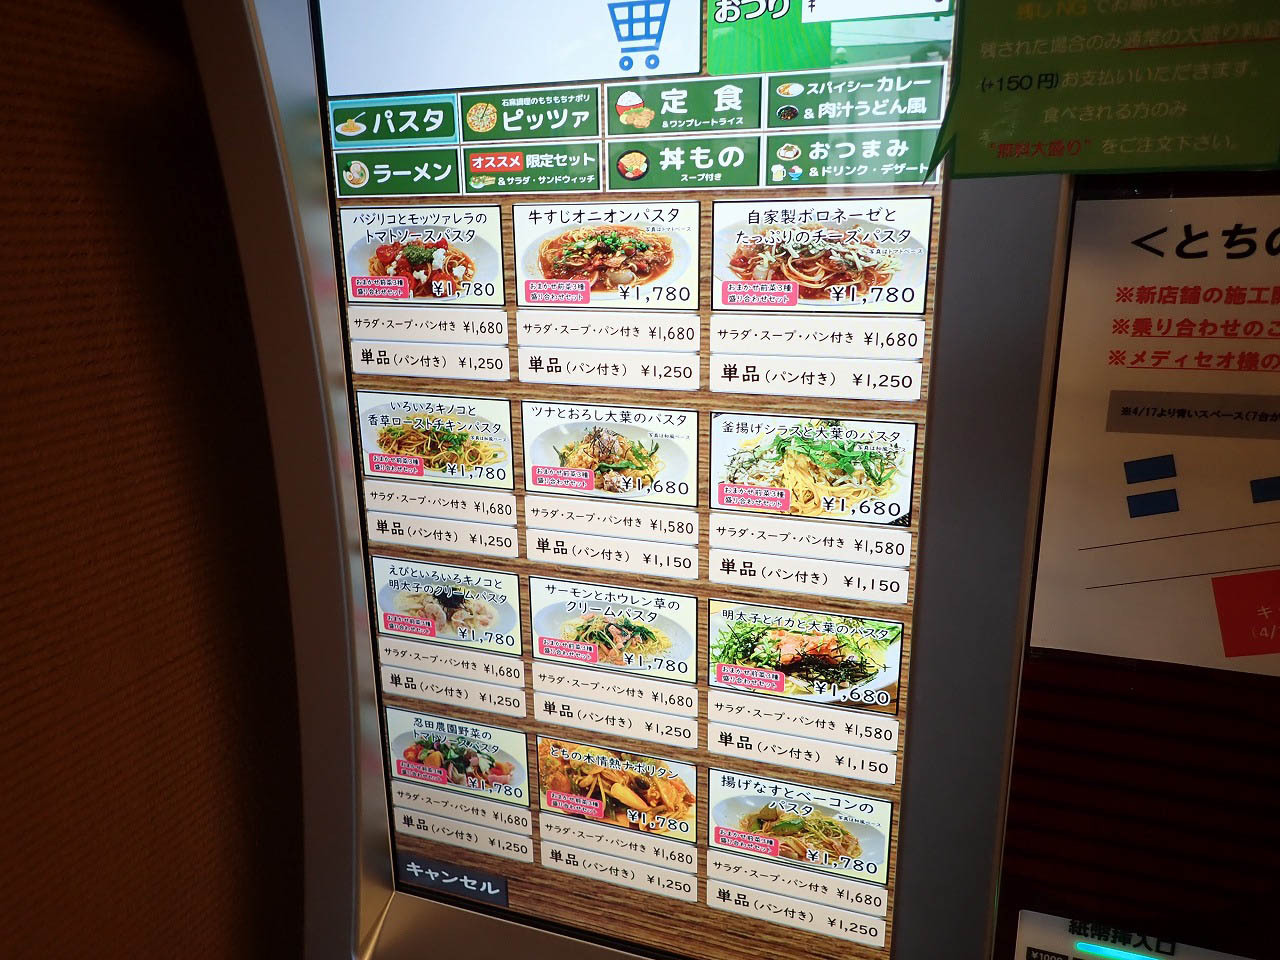 こちらの注文は自動販売機で食券を購入するスタイルです。ここではメニューを写真で一挙に紹介します。まずはパスタから